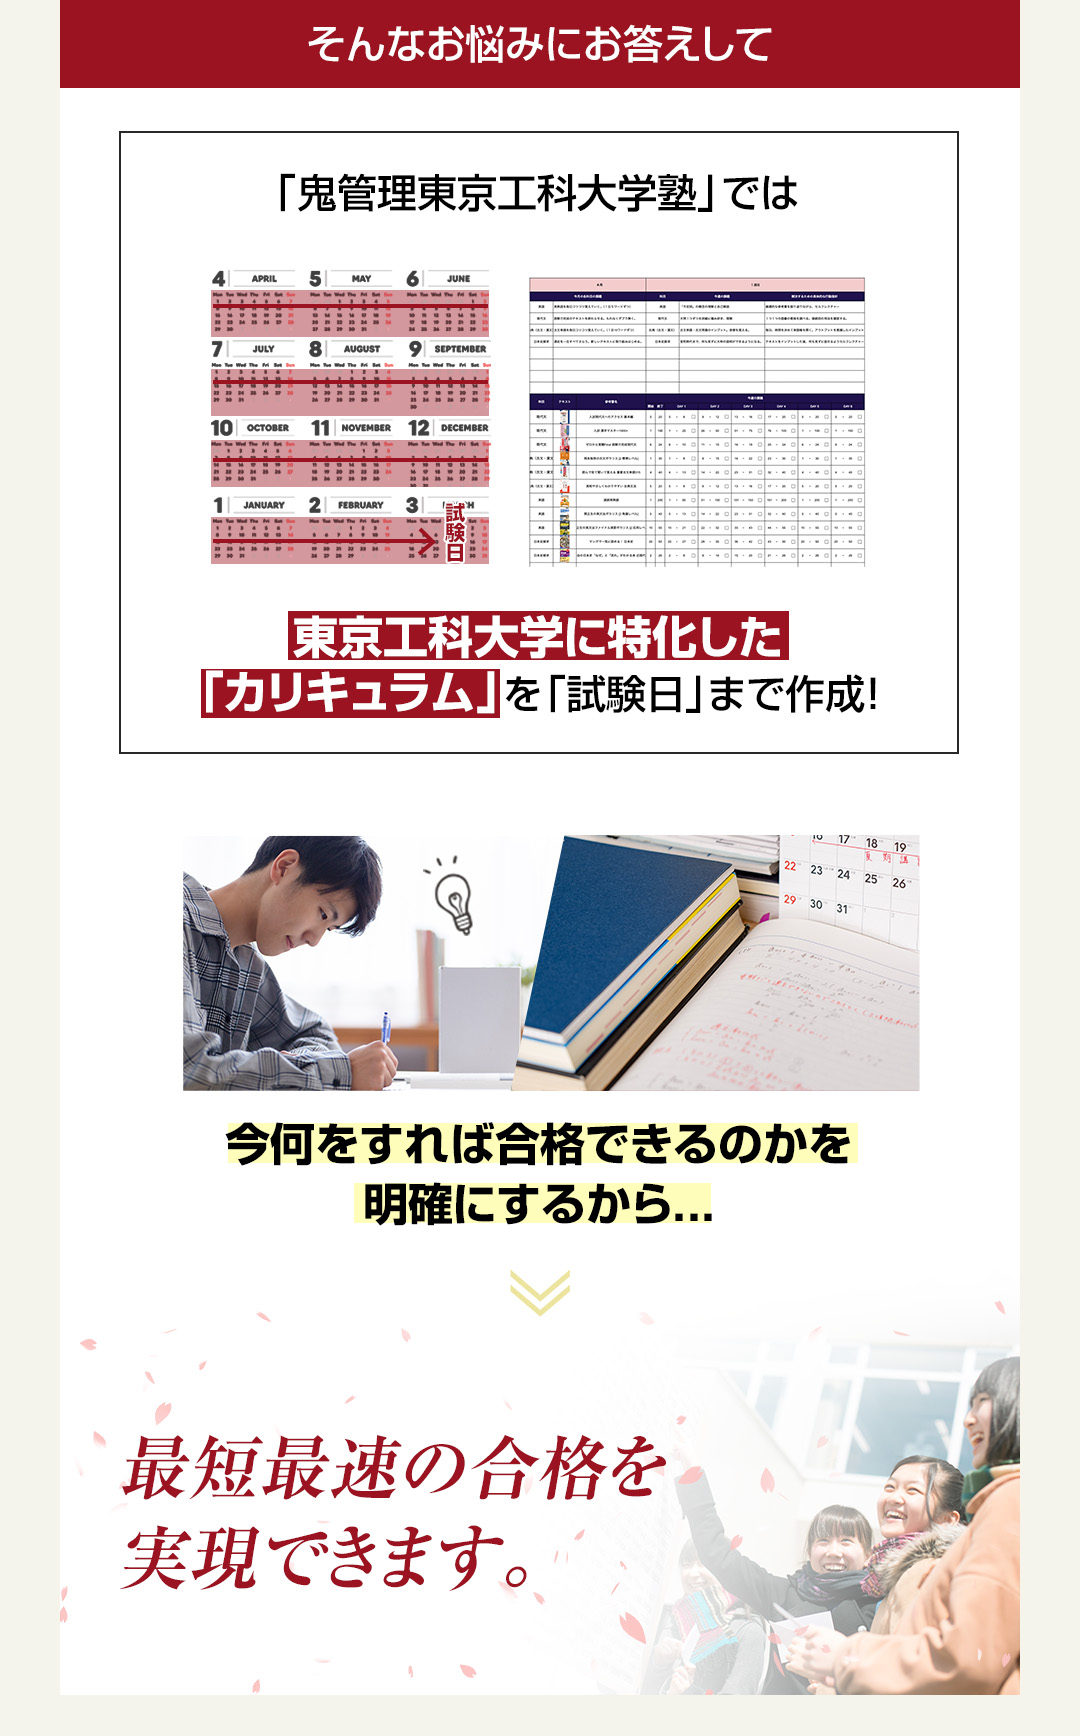 「鬼管理東京工科大学塾」では東京工科大学に特化した「カリキュラム」を「試験日」まで作成